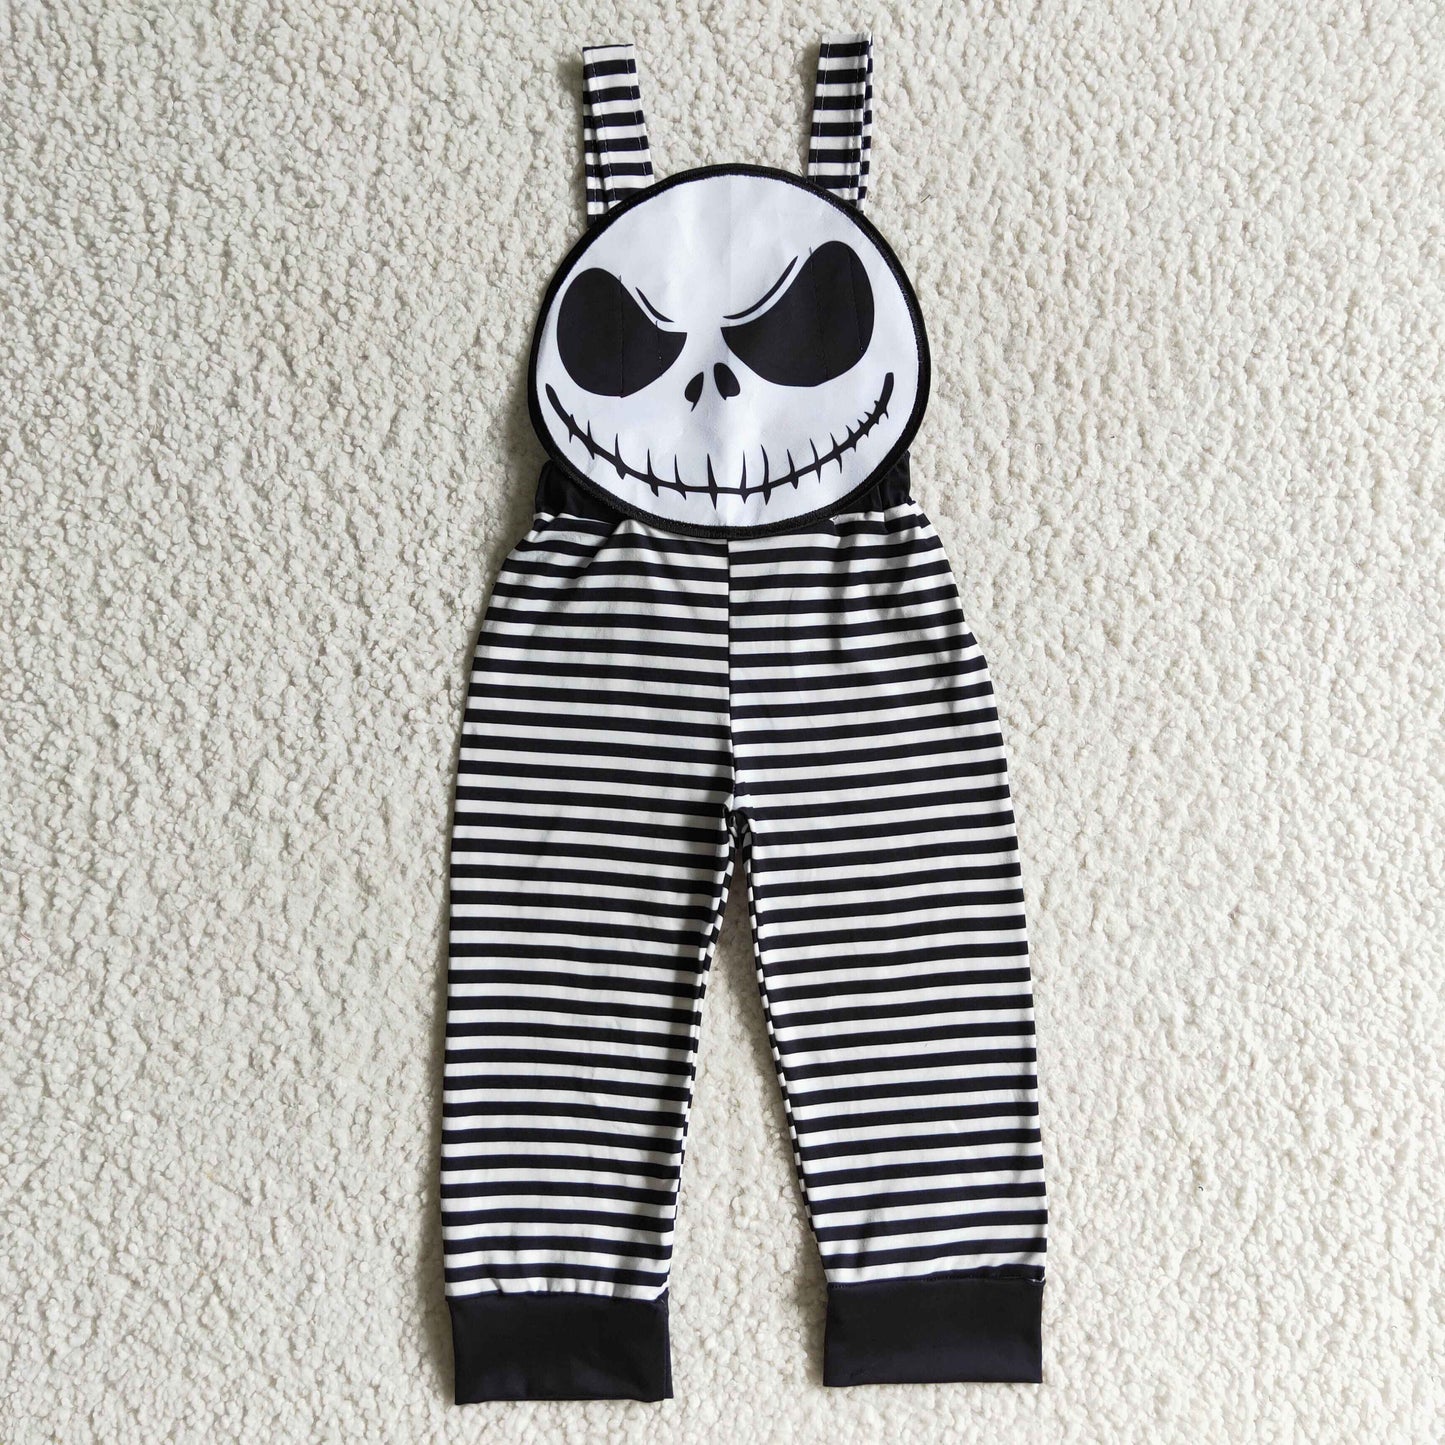 SR0081 Baby Girl Halloween Black Striped Romper